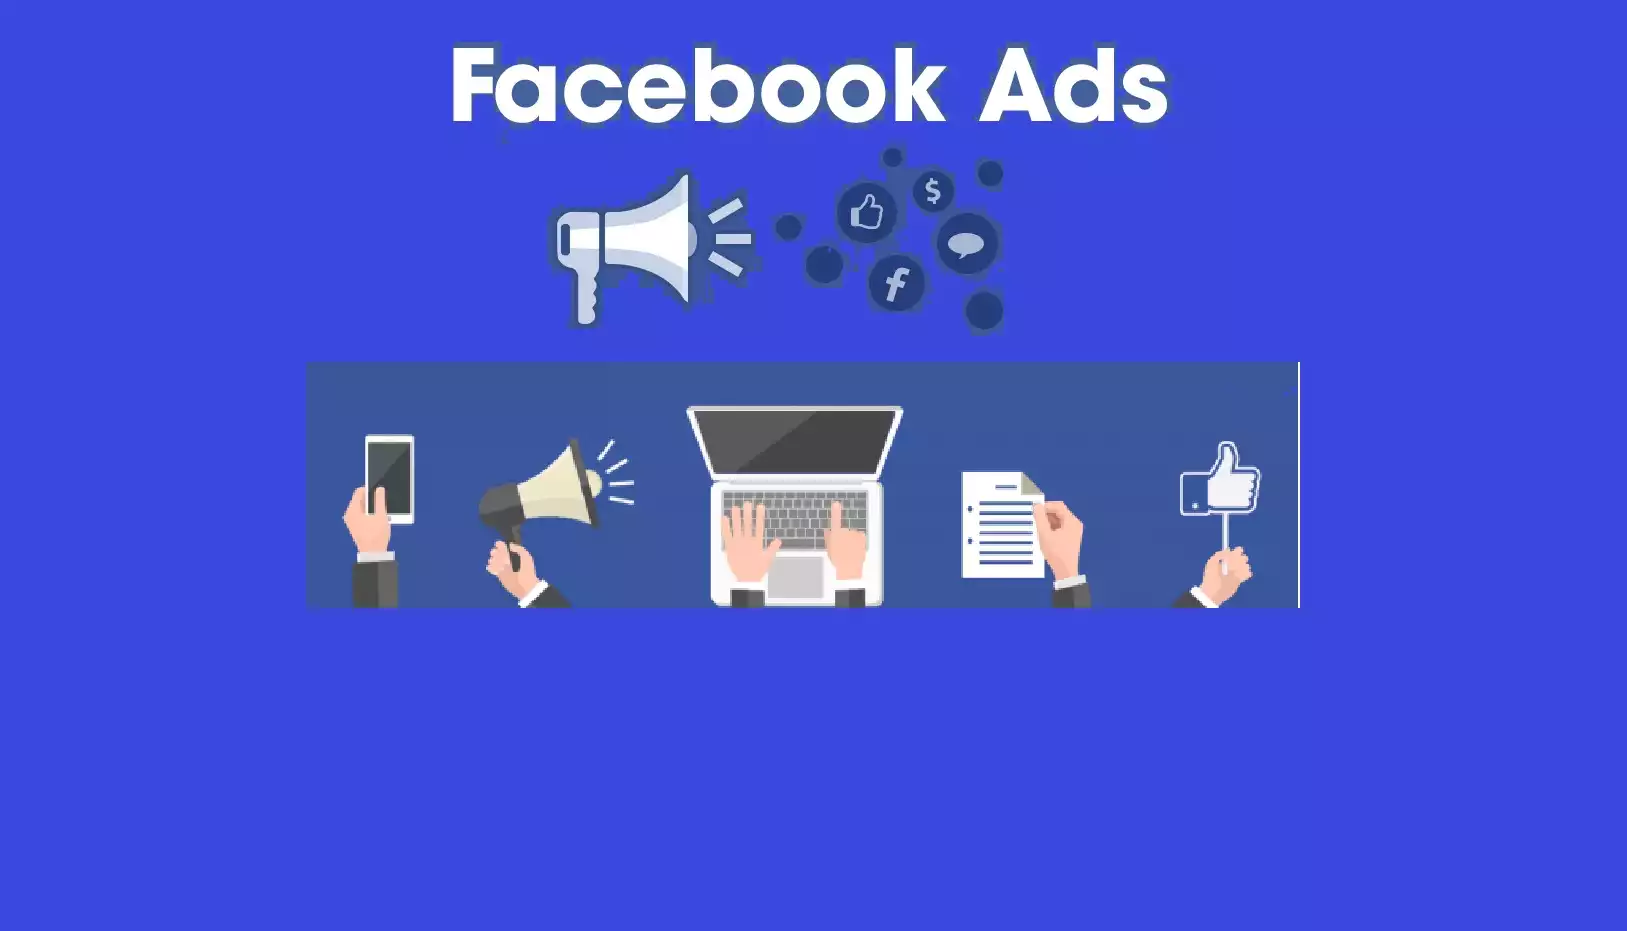 Cách chạy quảng cáo Facebook hiệu quả theo xu hướng mới và lựa chọn loại quảng cáo phù hợp